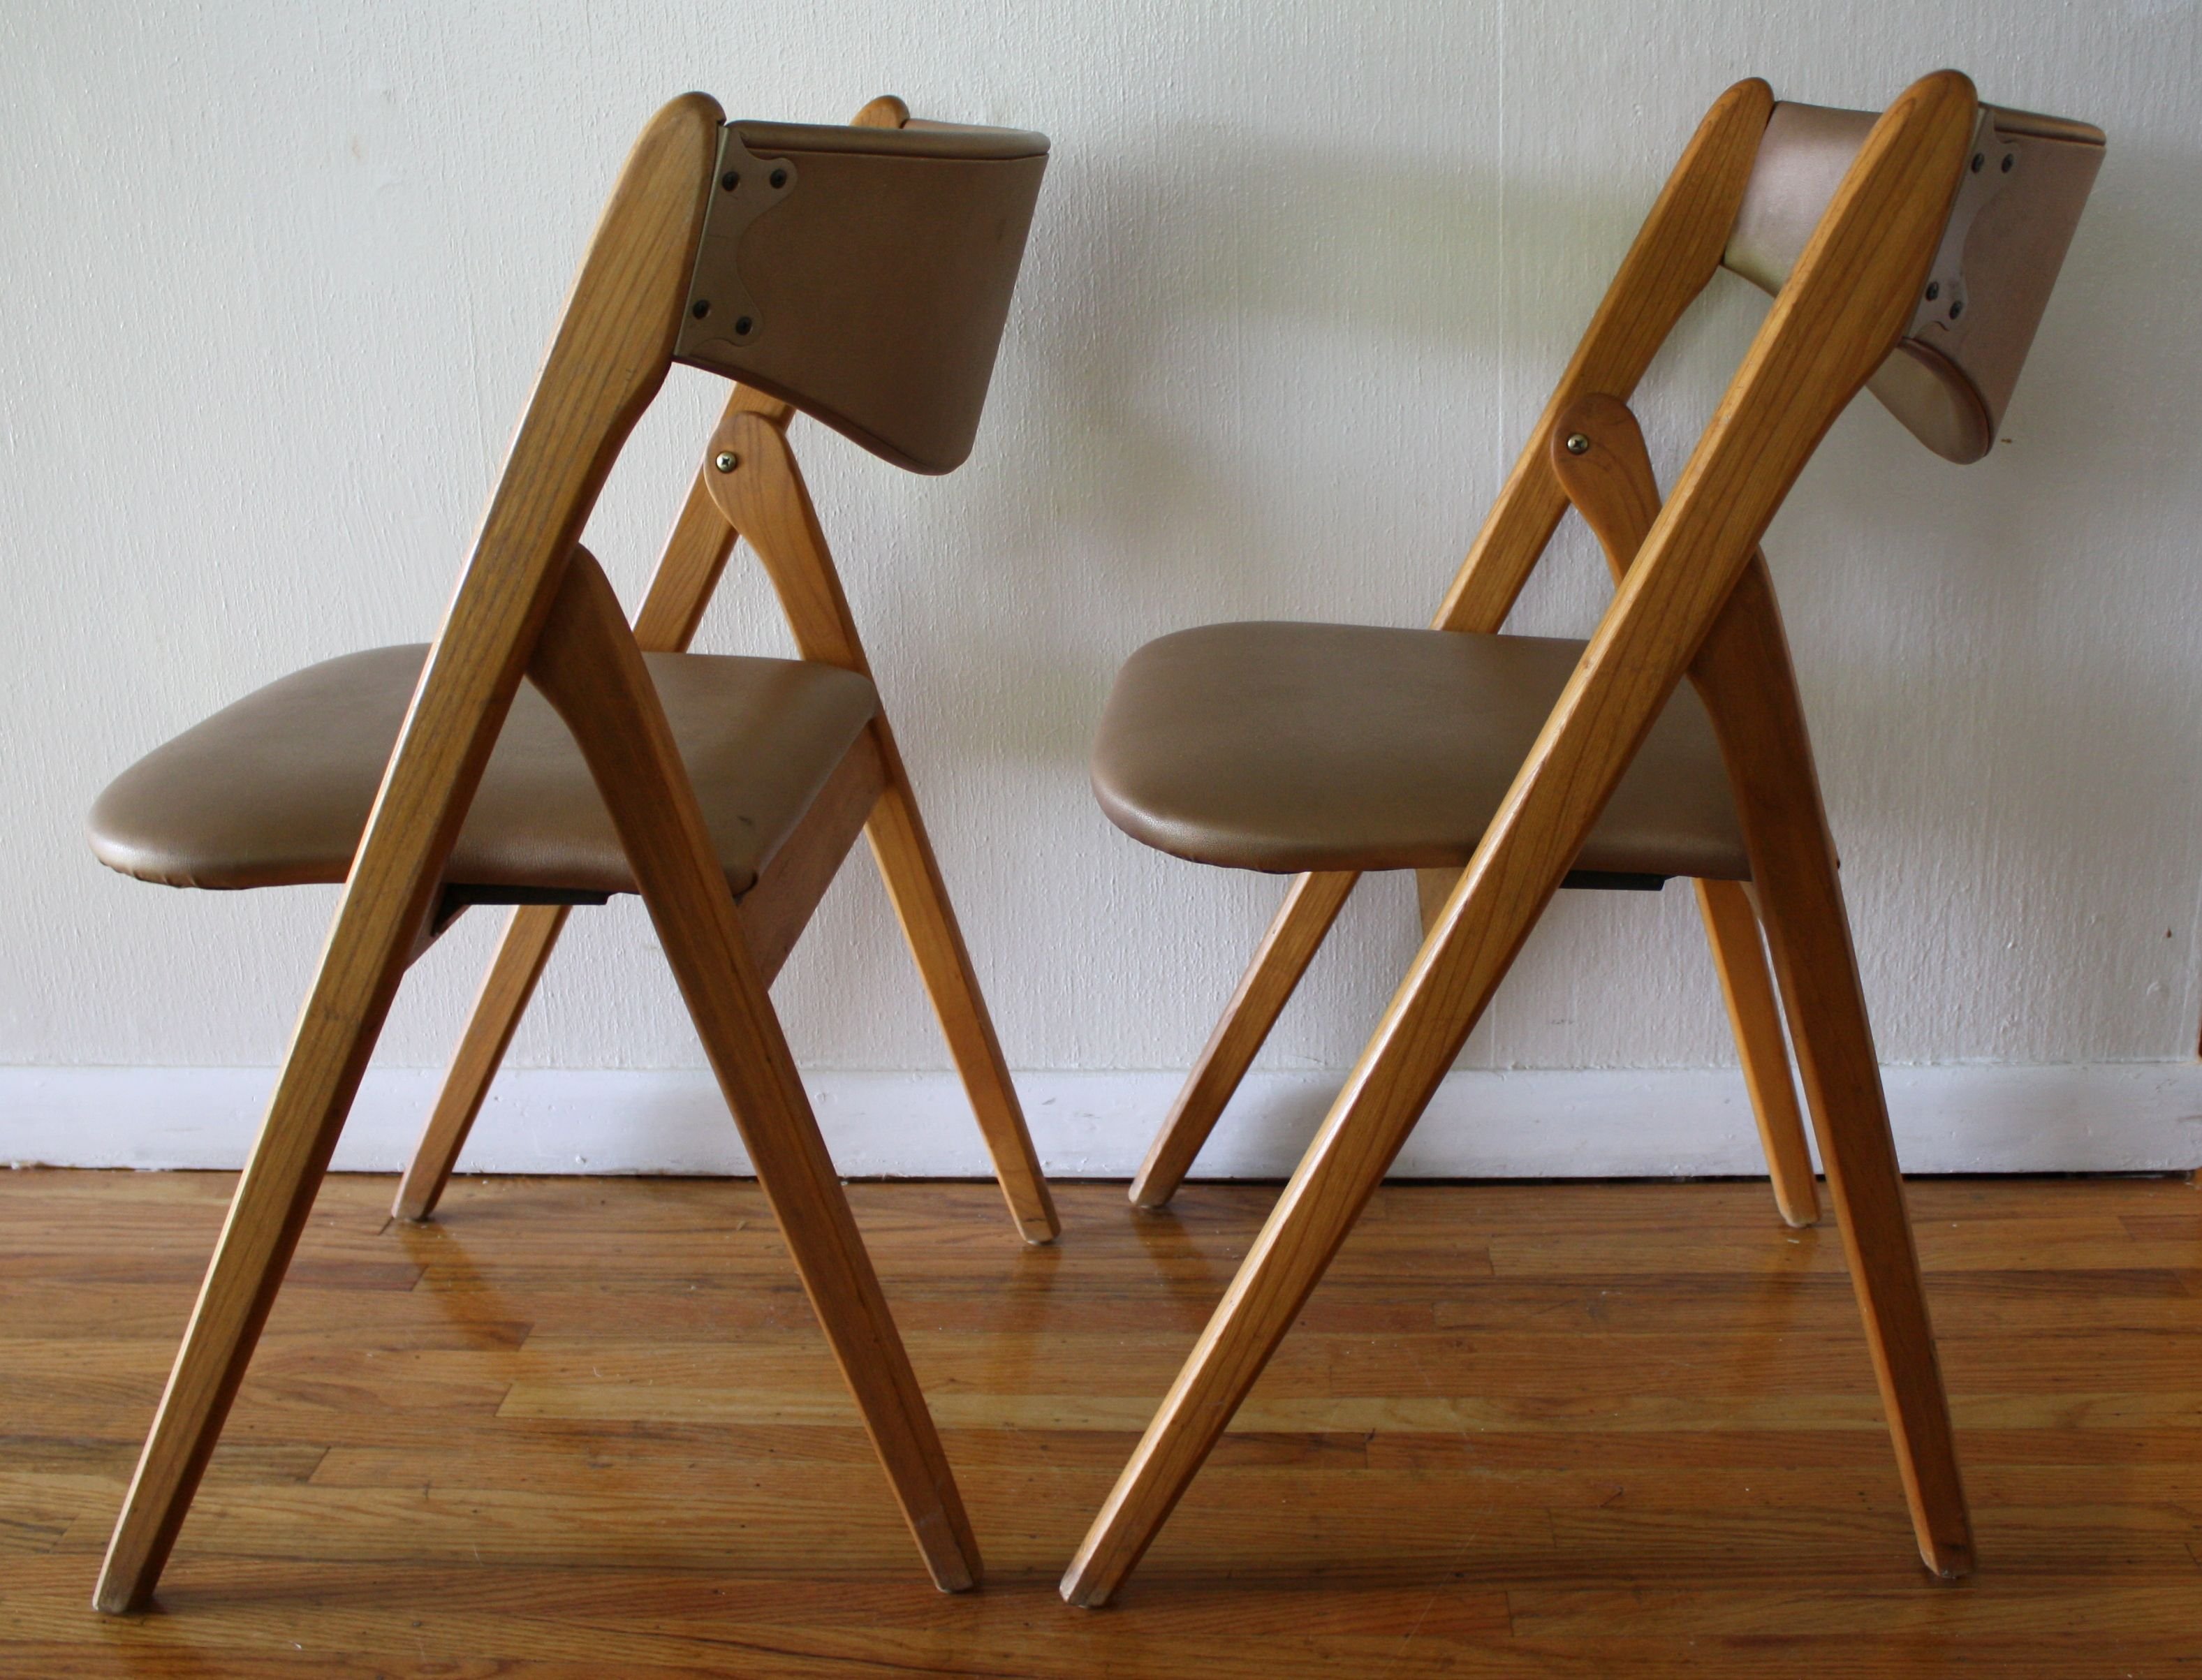 Складные стулья отзывы. Стул МИД сенчури. Стул Chair (Чаир) раскладной. Стул складной деревянный икеа. Складные стулья Mid Century Modern.